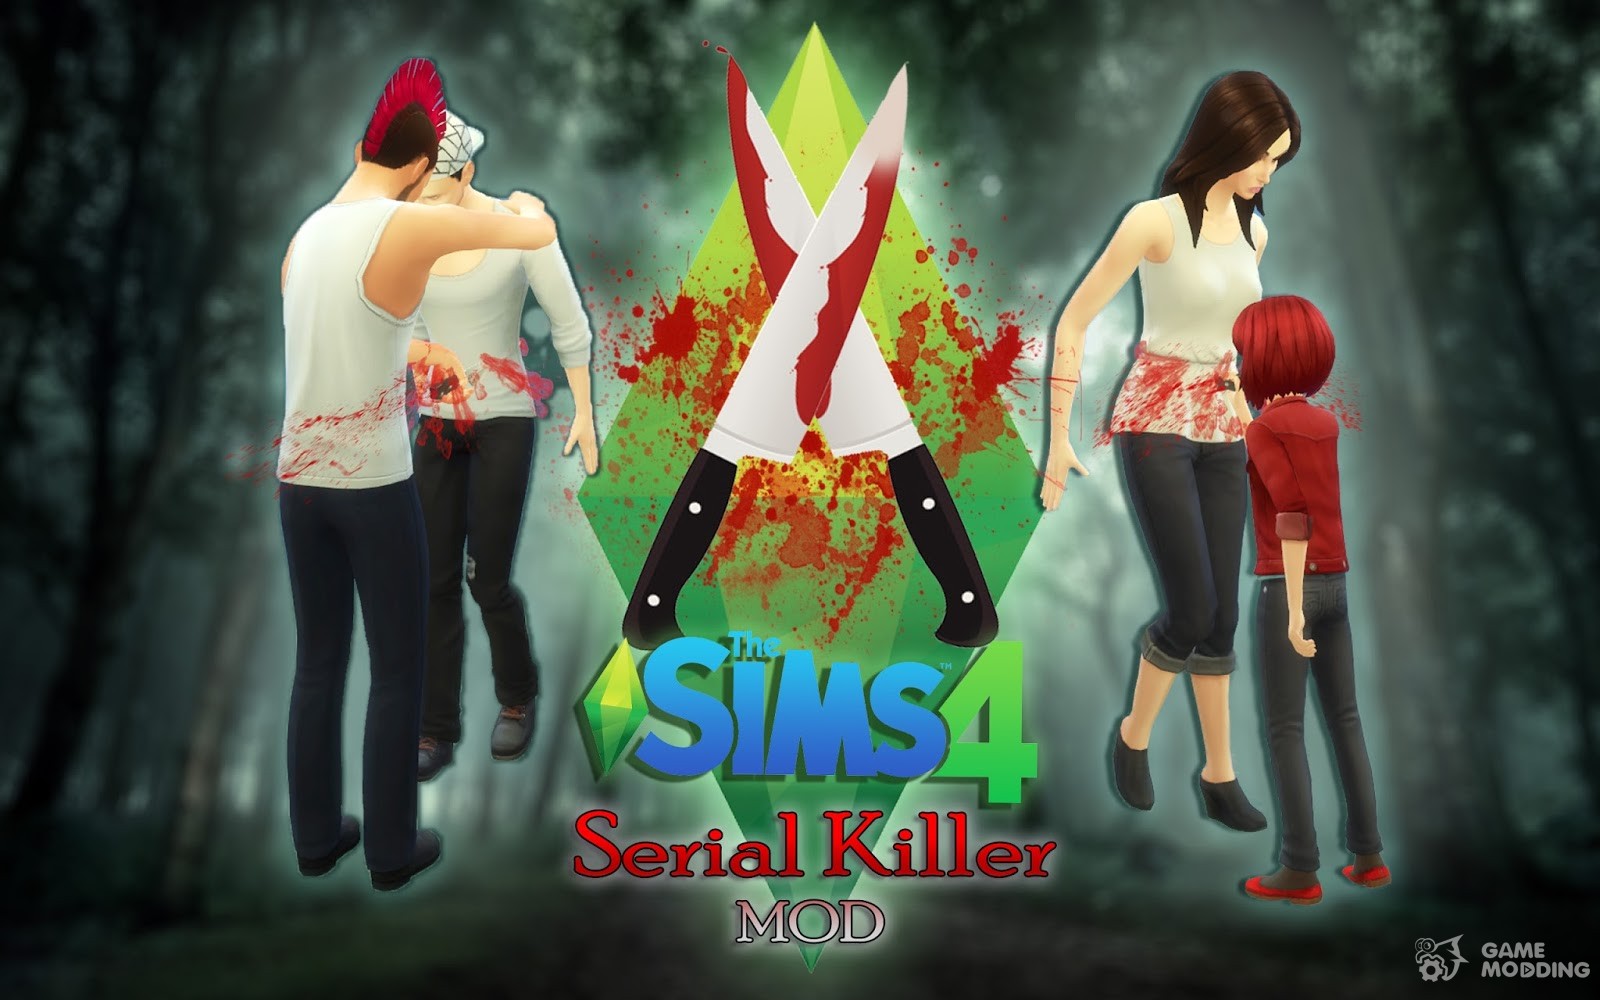 serial killer mod download sims 4